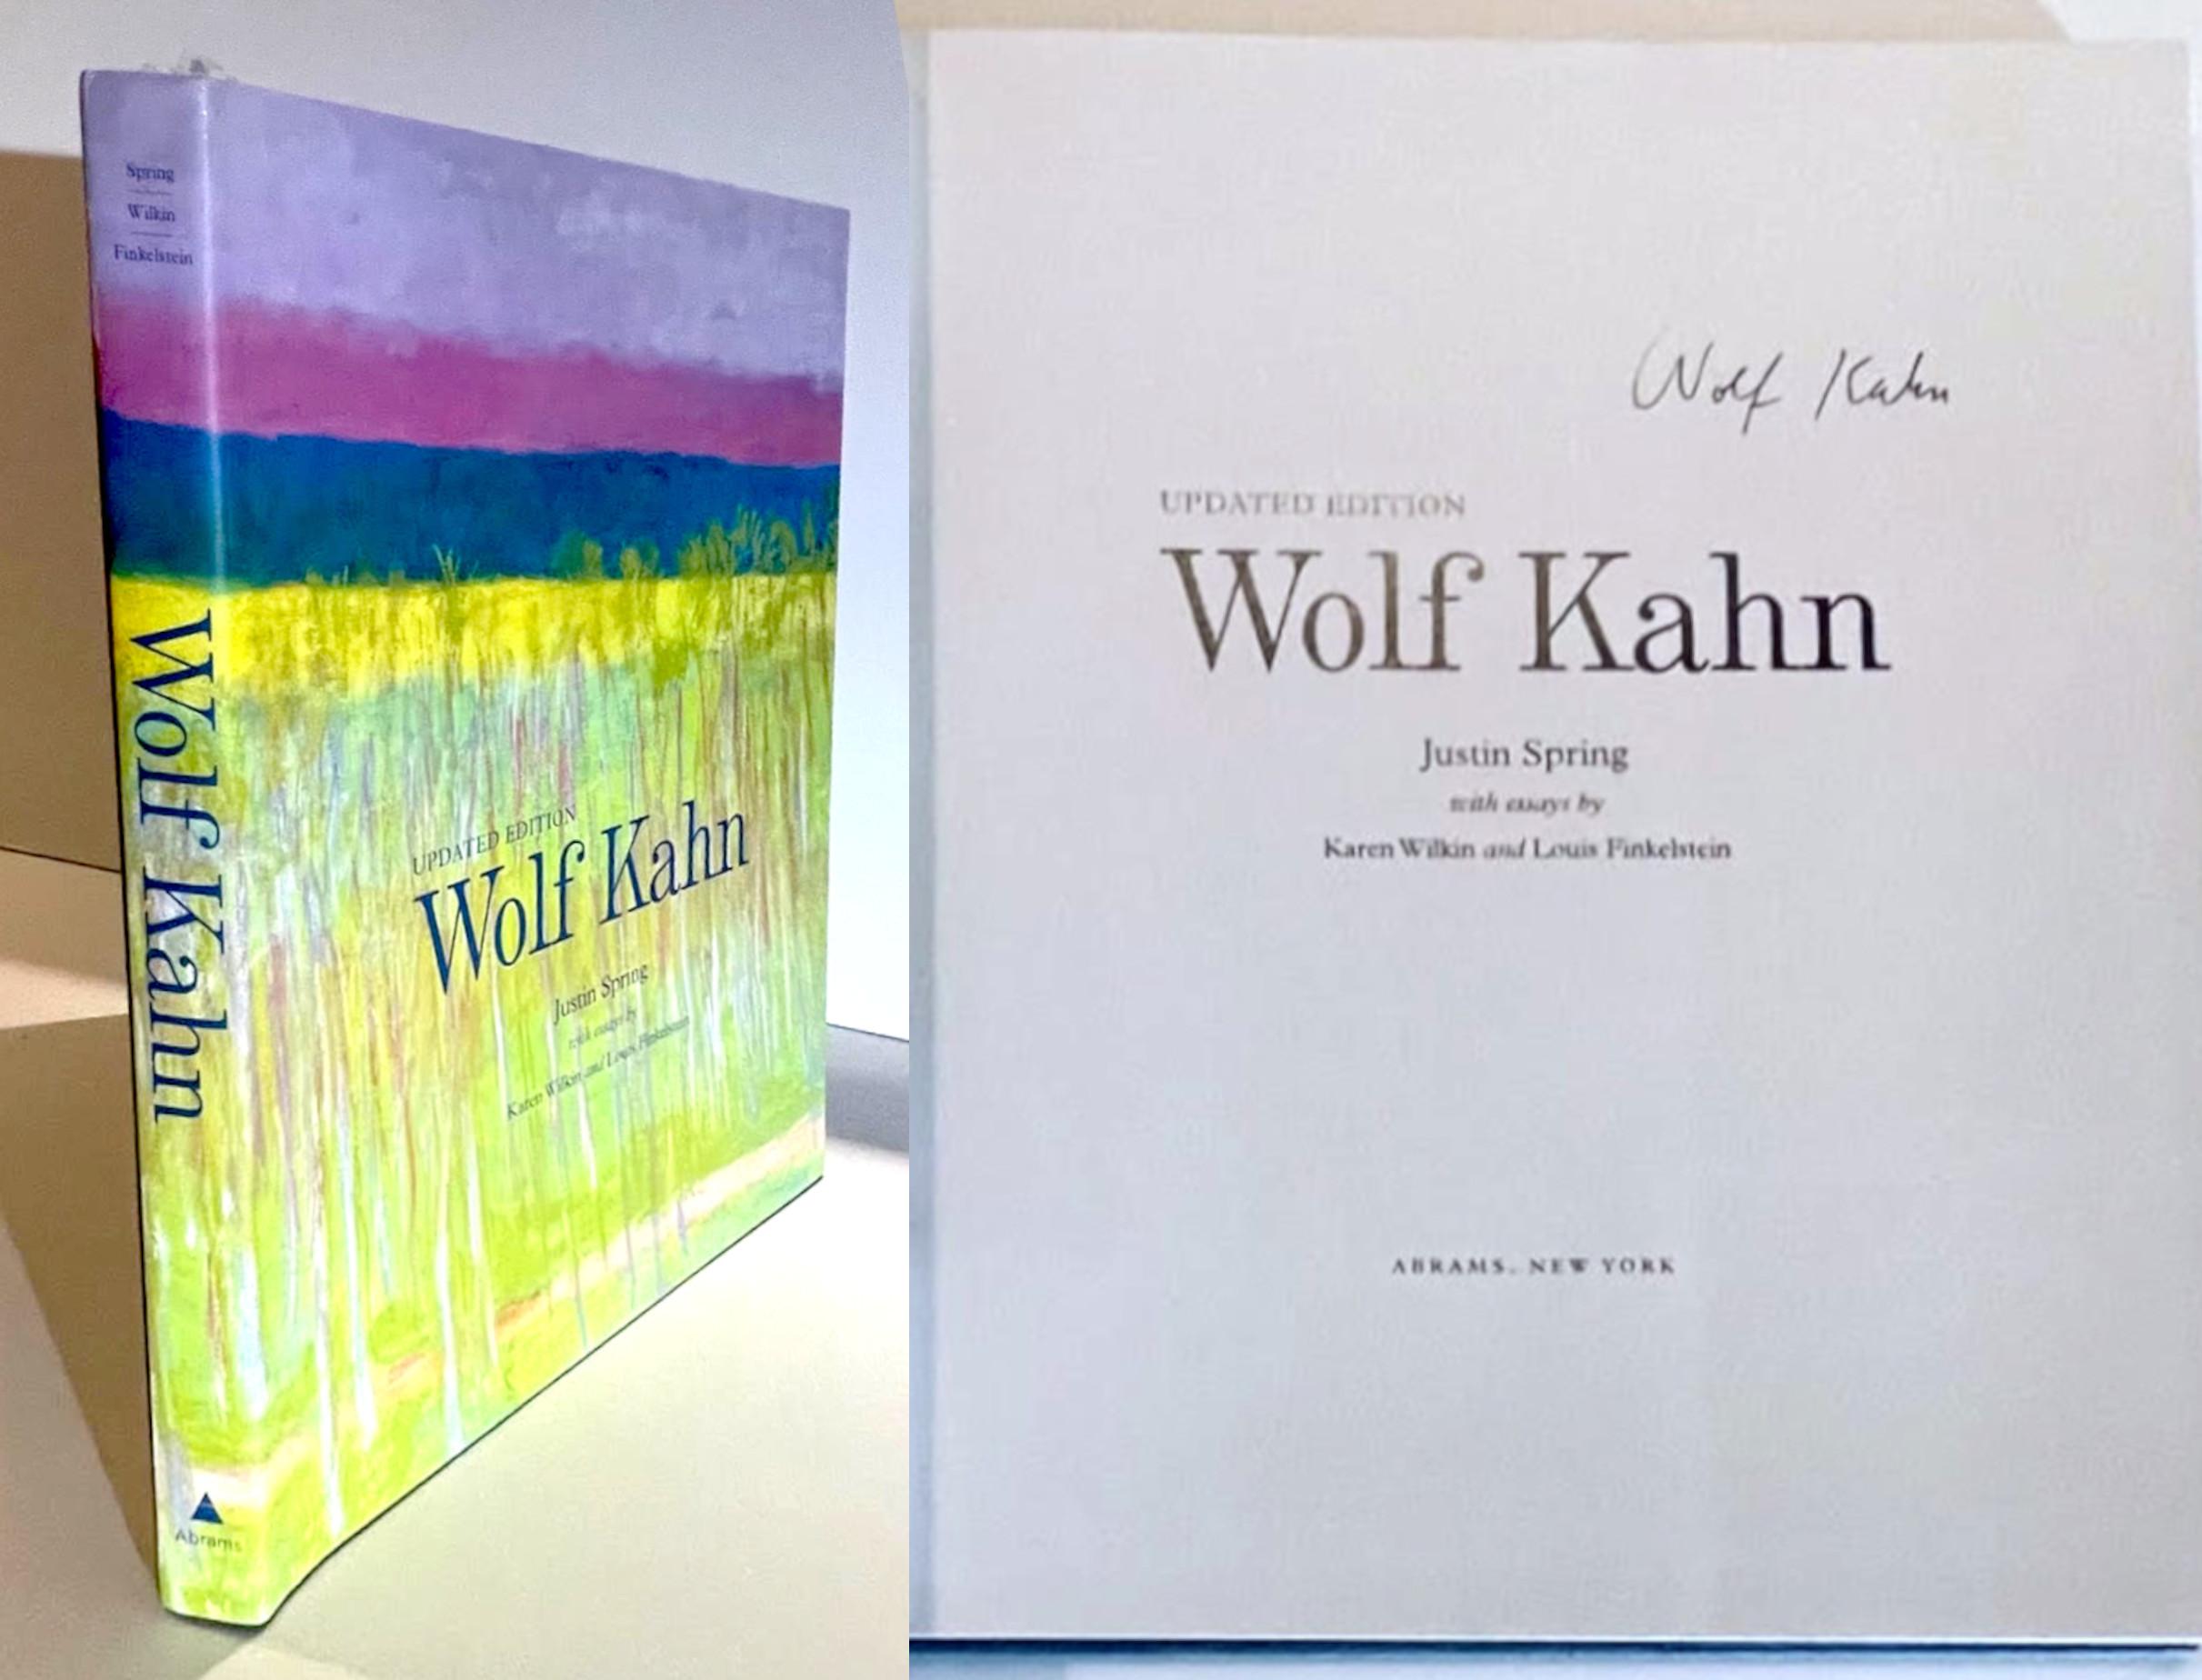 Wolf Kahn (signé à la main par Wolf Kahn), 2011
Monographie reliée avec jaquette (signée à la main par Wolf Kahn).
Signé à la main par Wolf Kahn sur la page de titre.
13 × 12 × 1 1/2 pouces
Cette monographie cartonnée magnifiquement illustrée avec